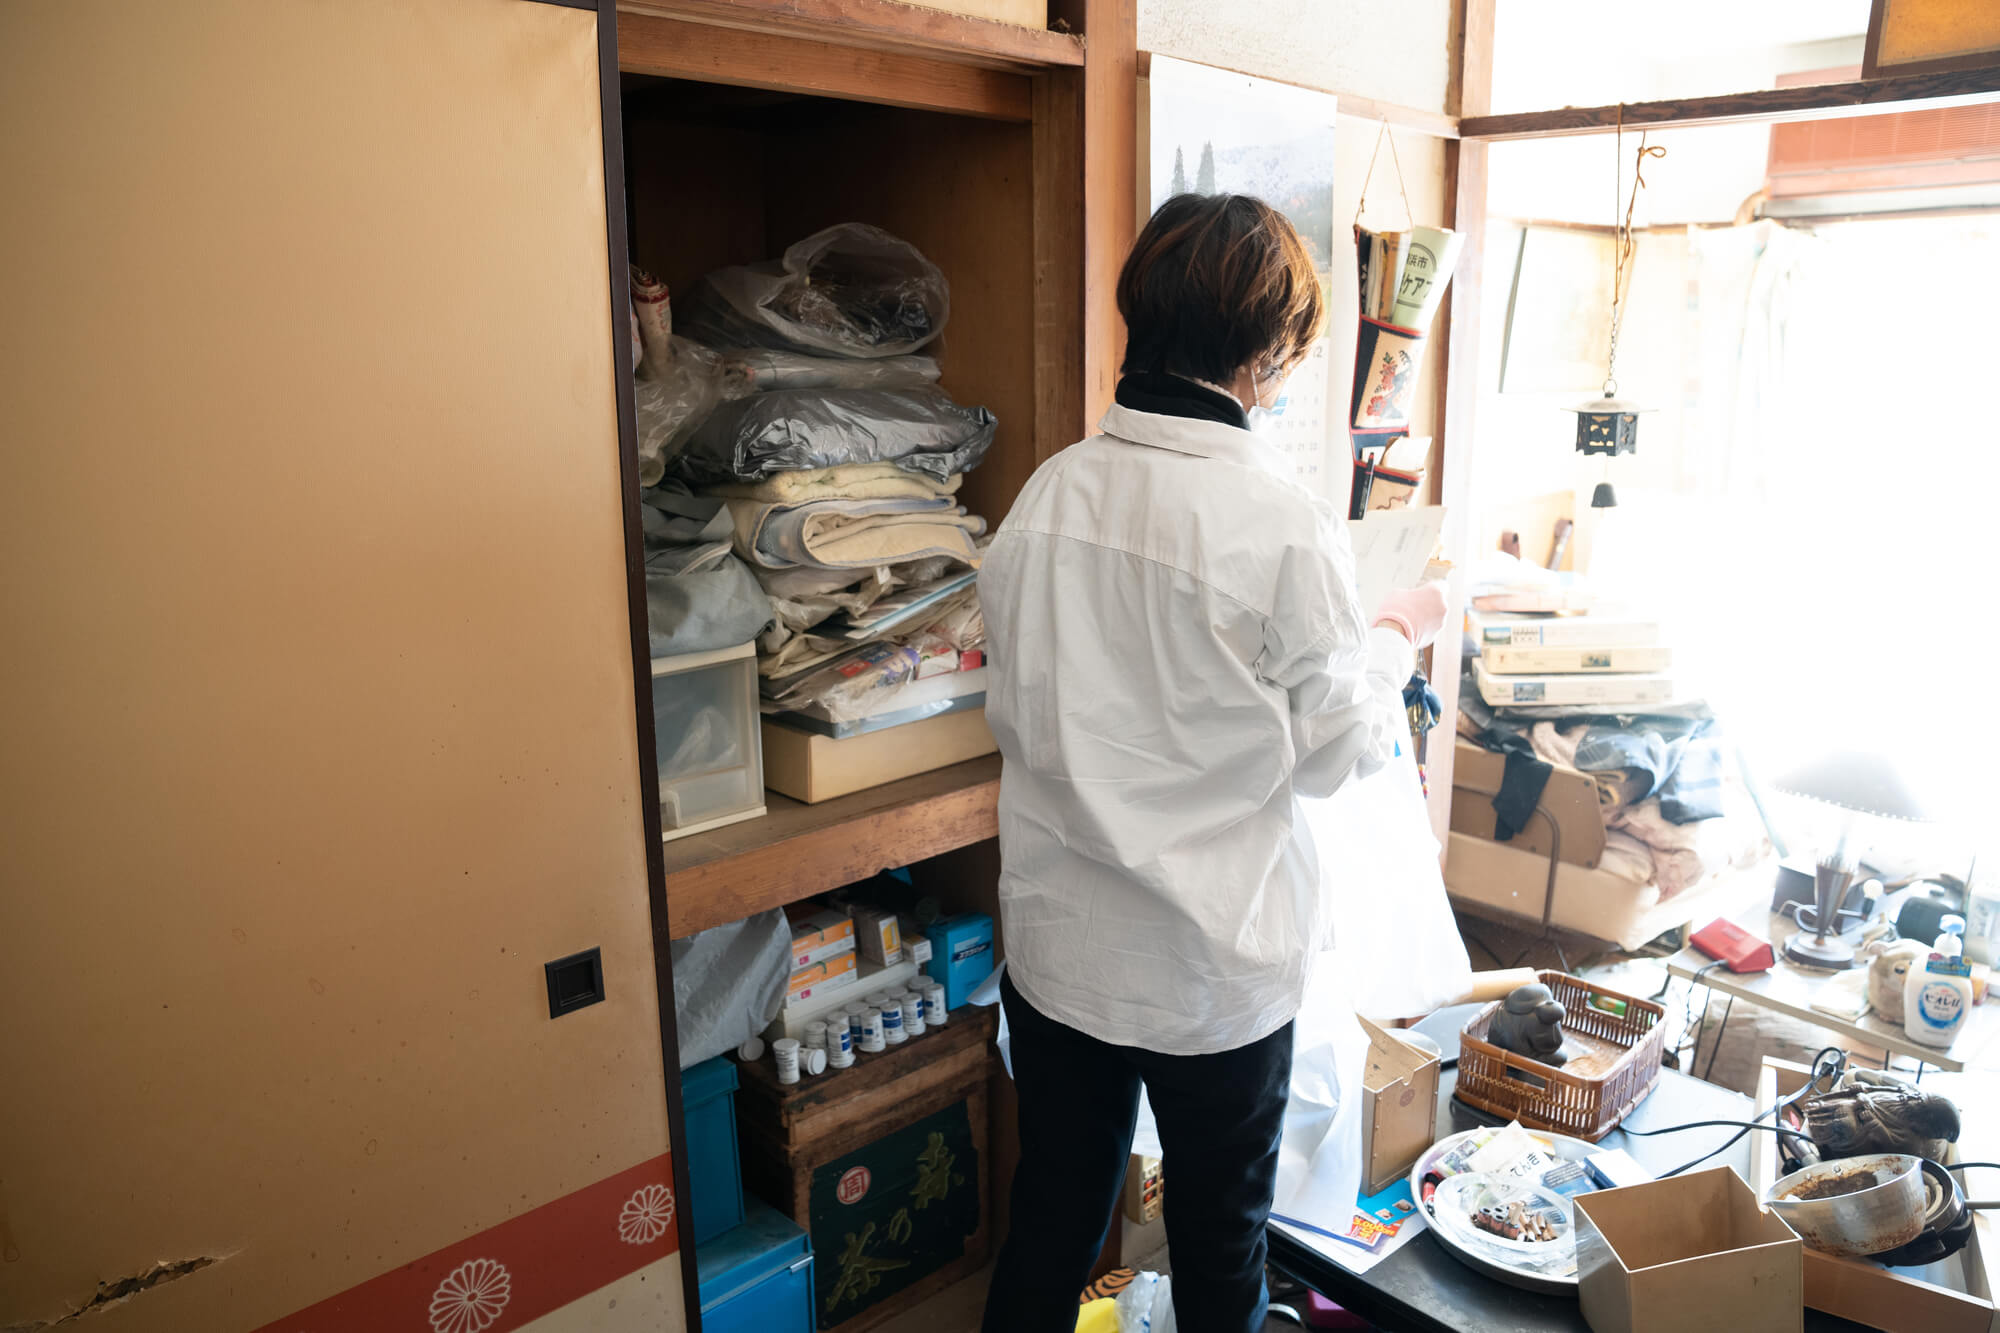 愛知県豊田市のおすすめ遺品整理業者やかかる費用、生前整理も任せられるのかどうかなどについて解説